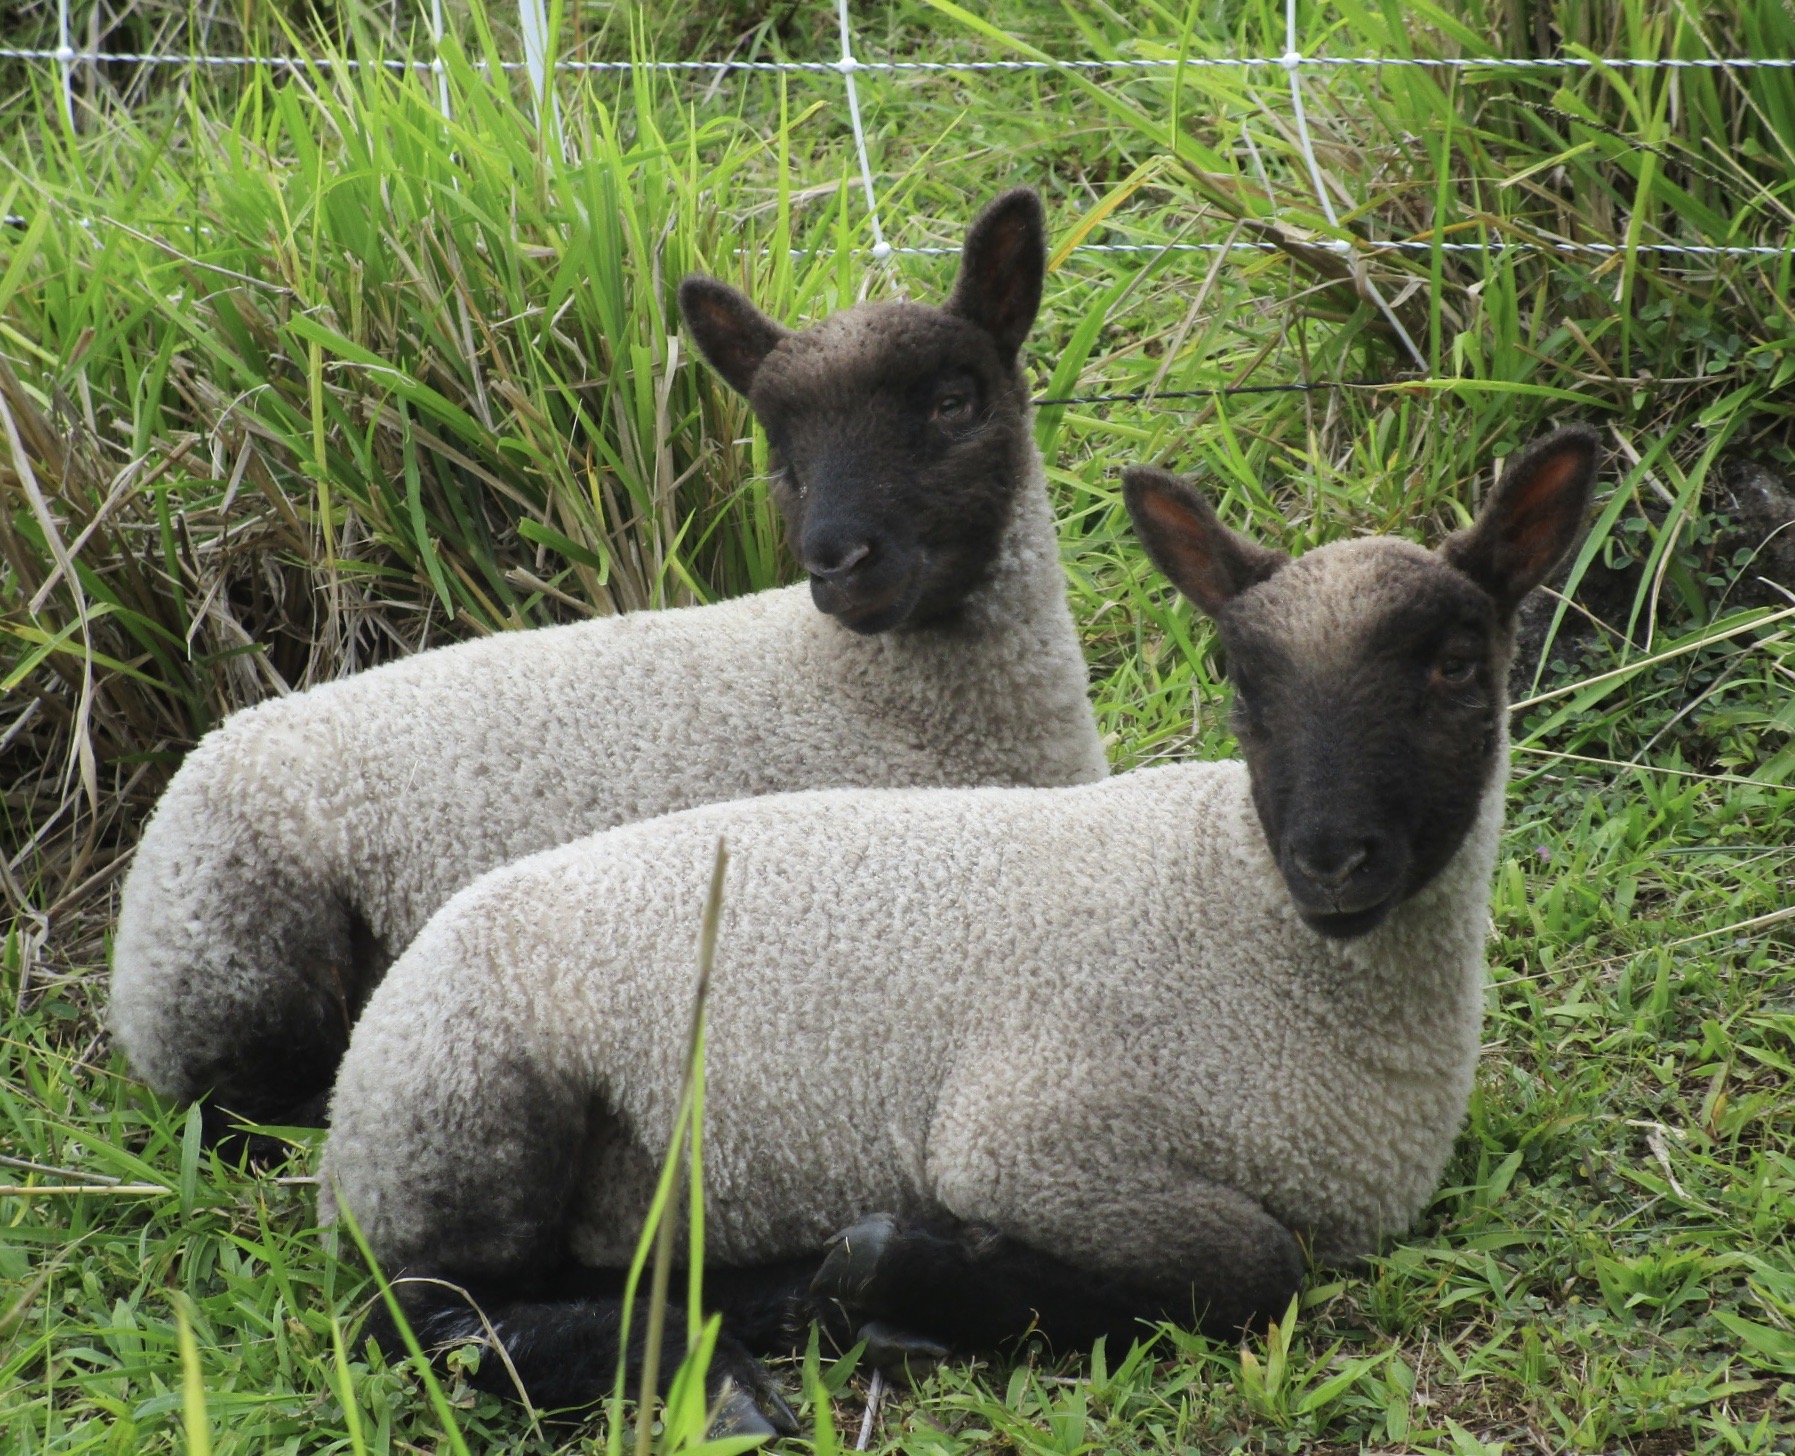 Twin Lambs